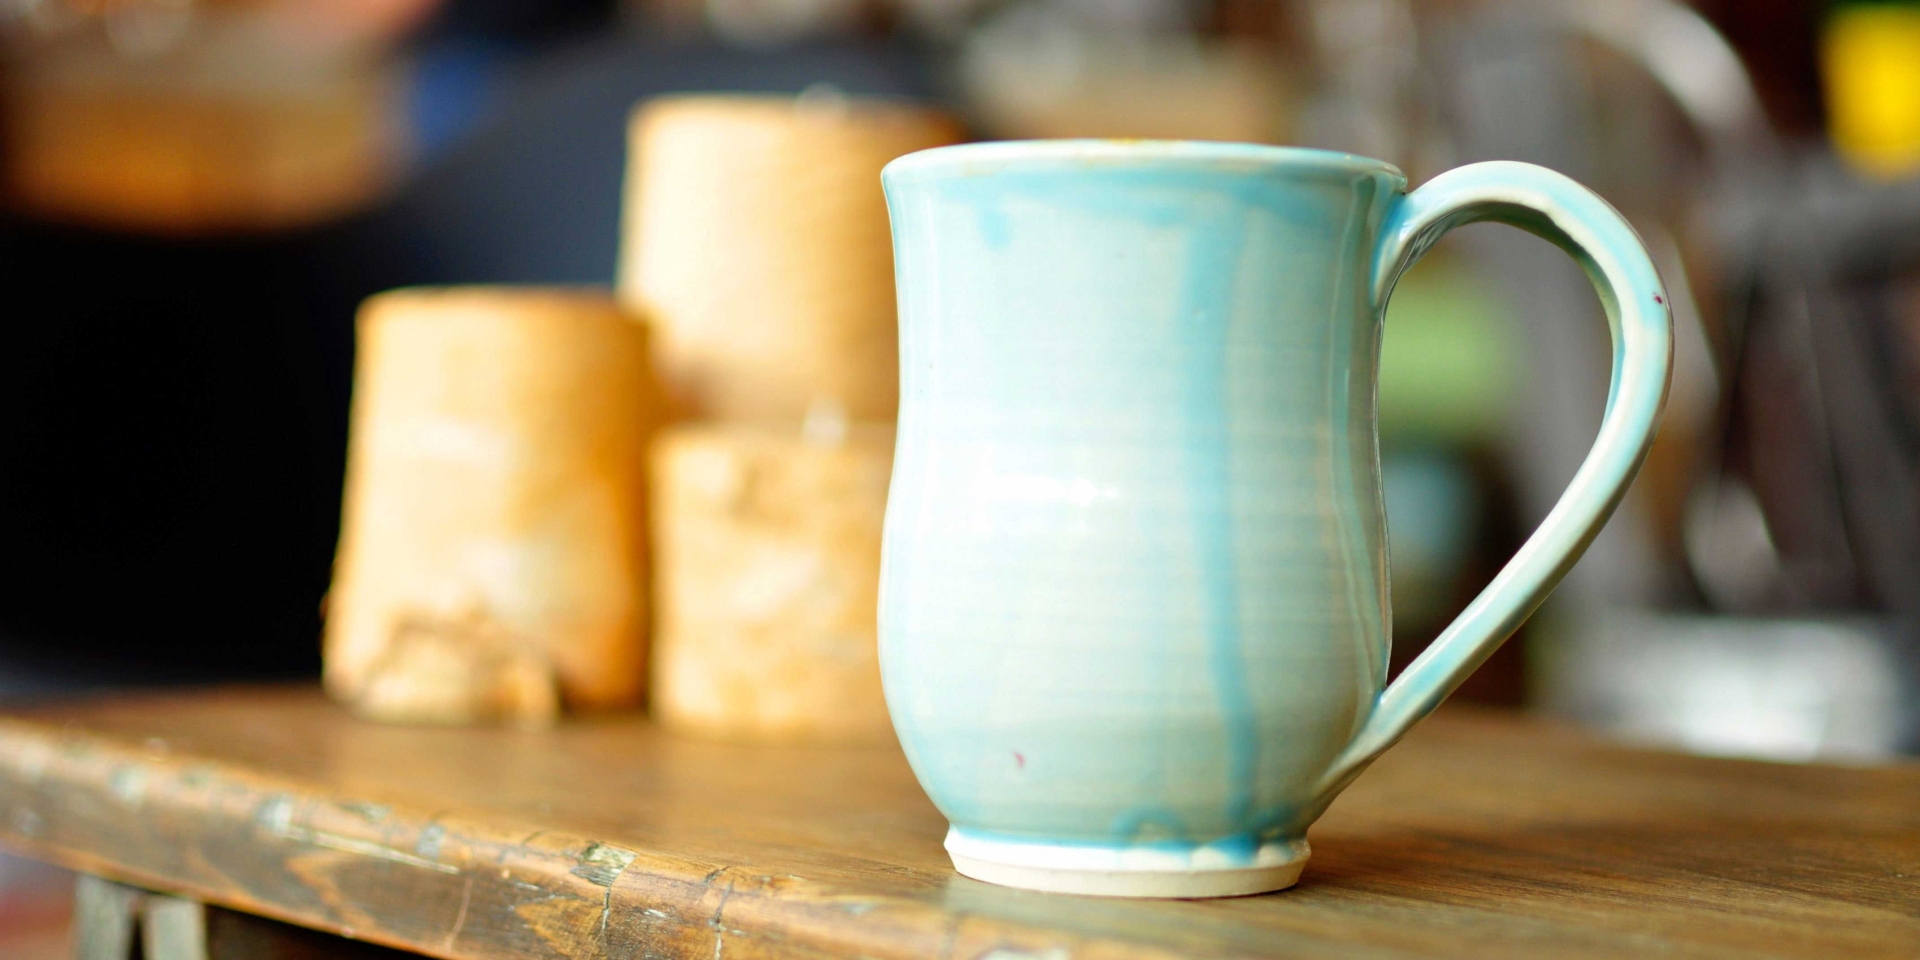 A ceramic mug with blue glaze